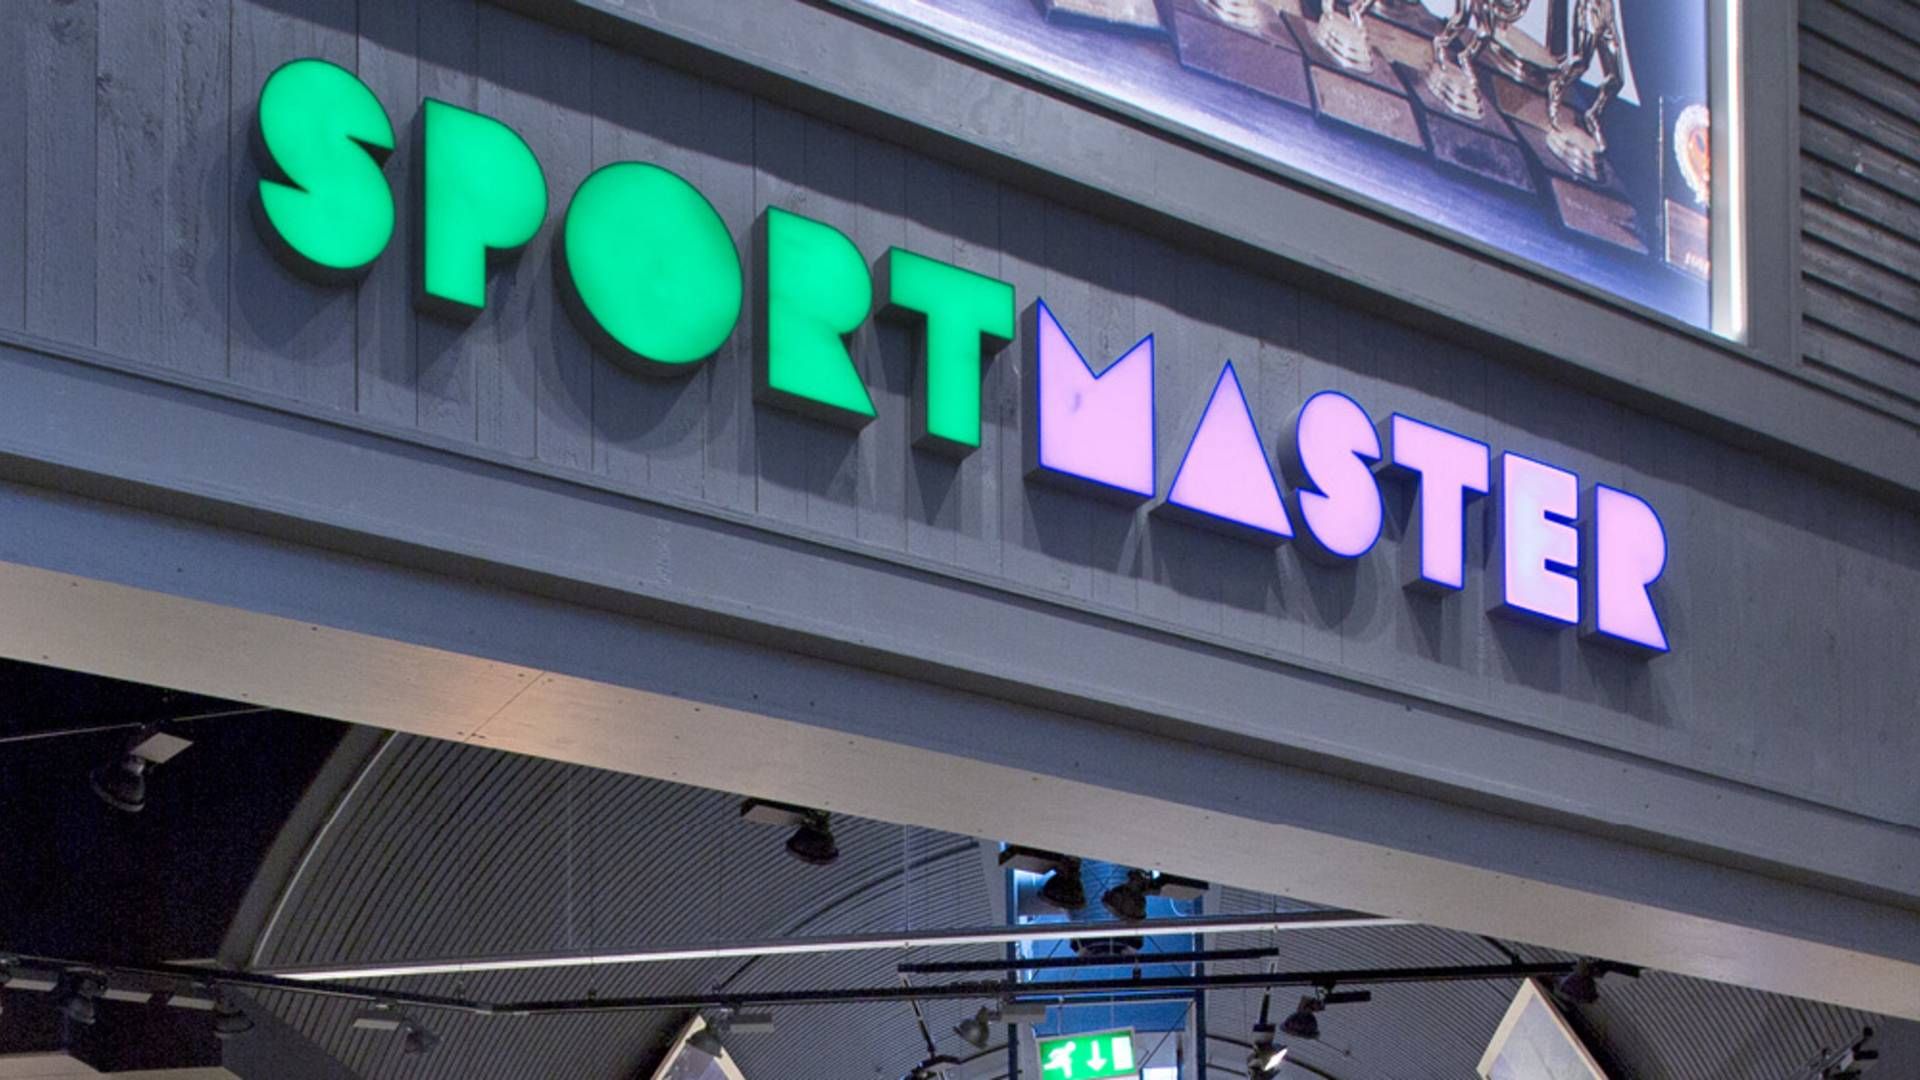 Sportmasters omdiskuterede ejere satte Sportmaster i Darnmark til salg - kort efter et salg i Polen var sat i gang | Foto: PR/Sportmaster